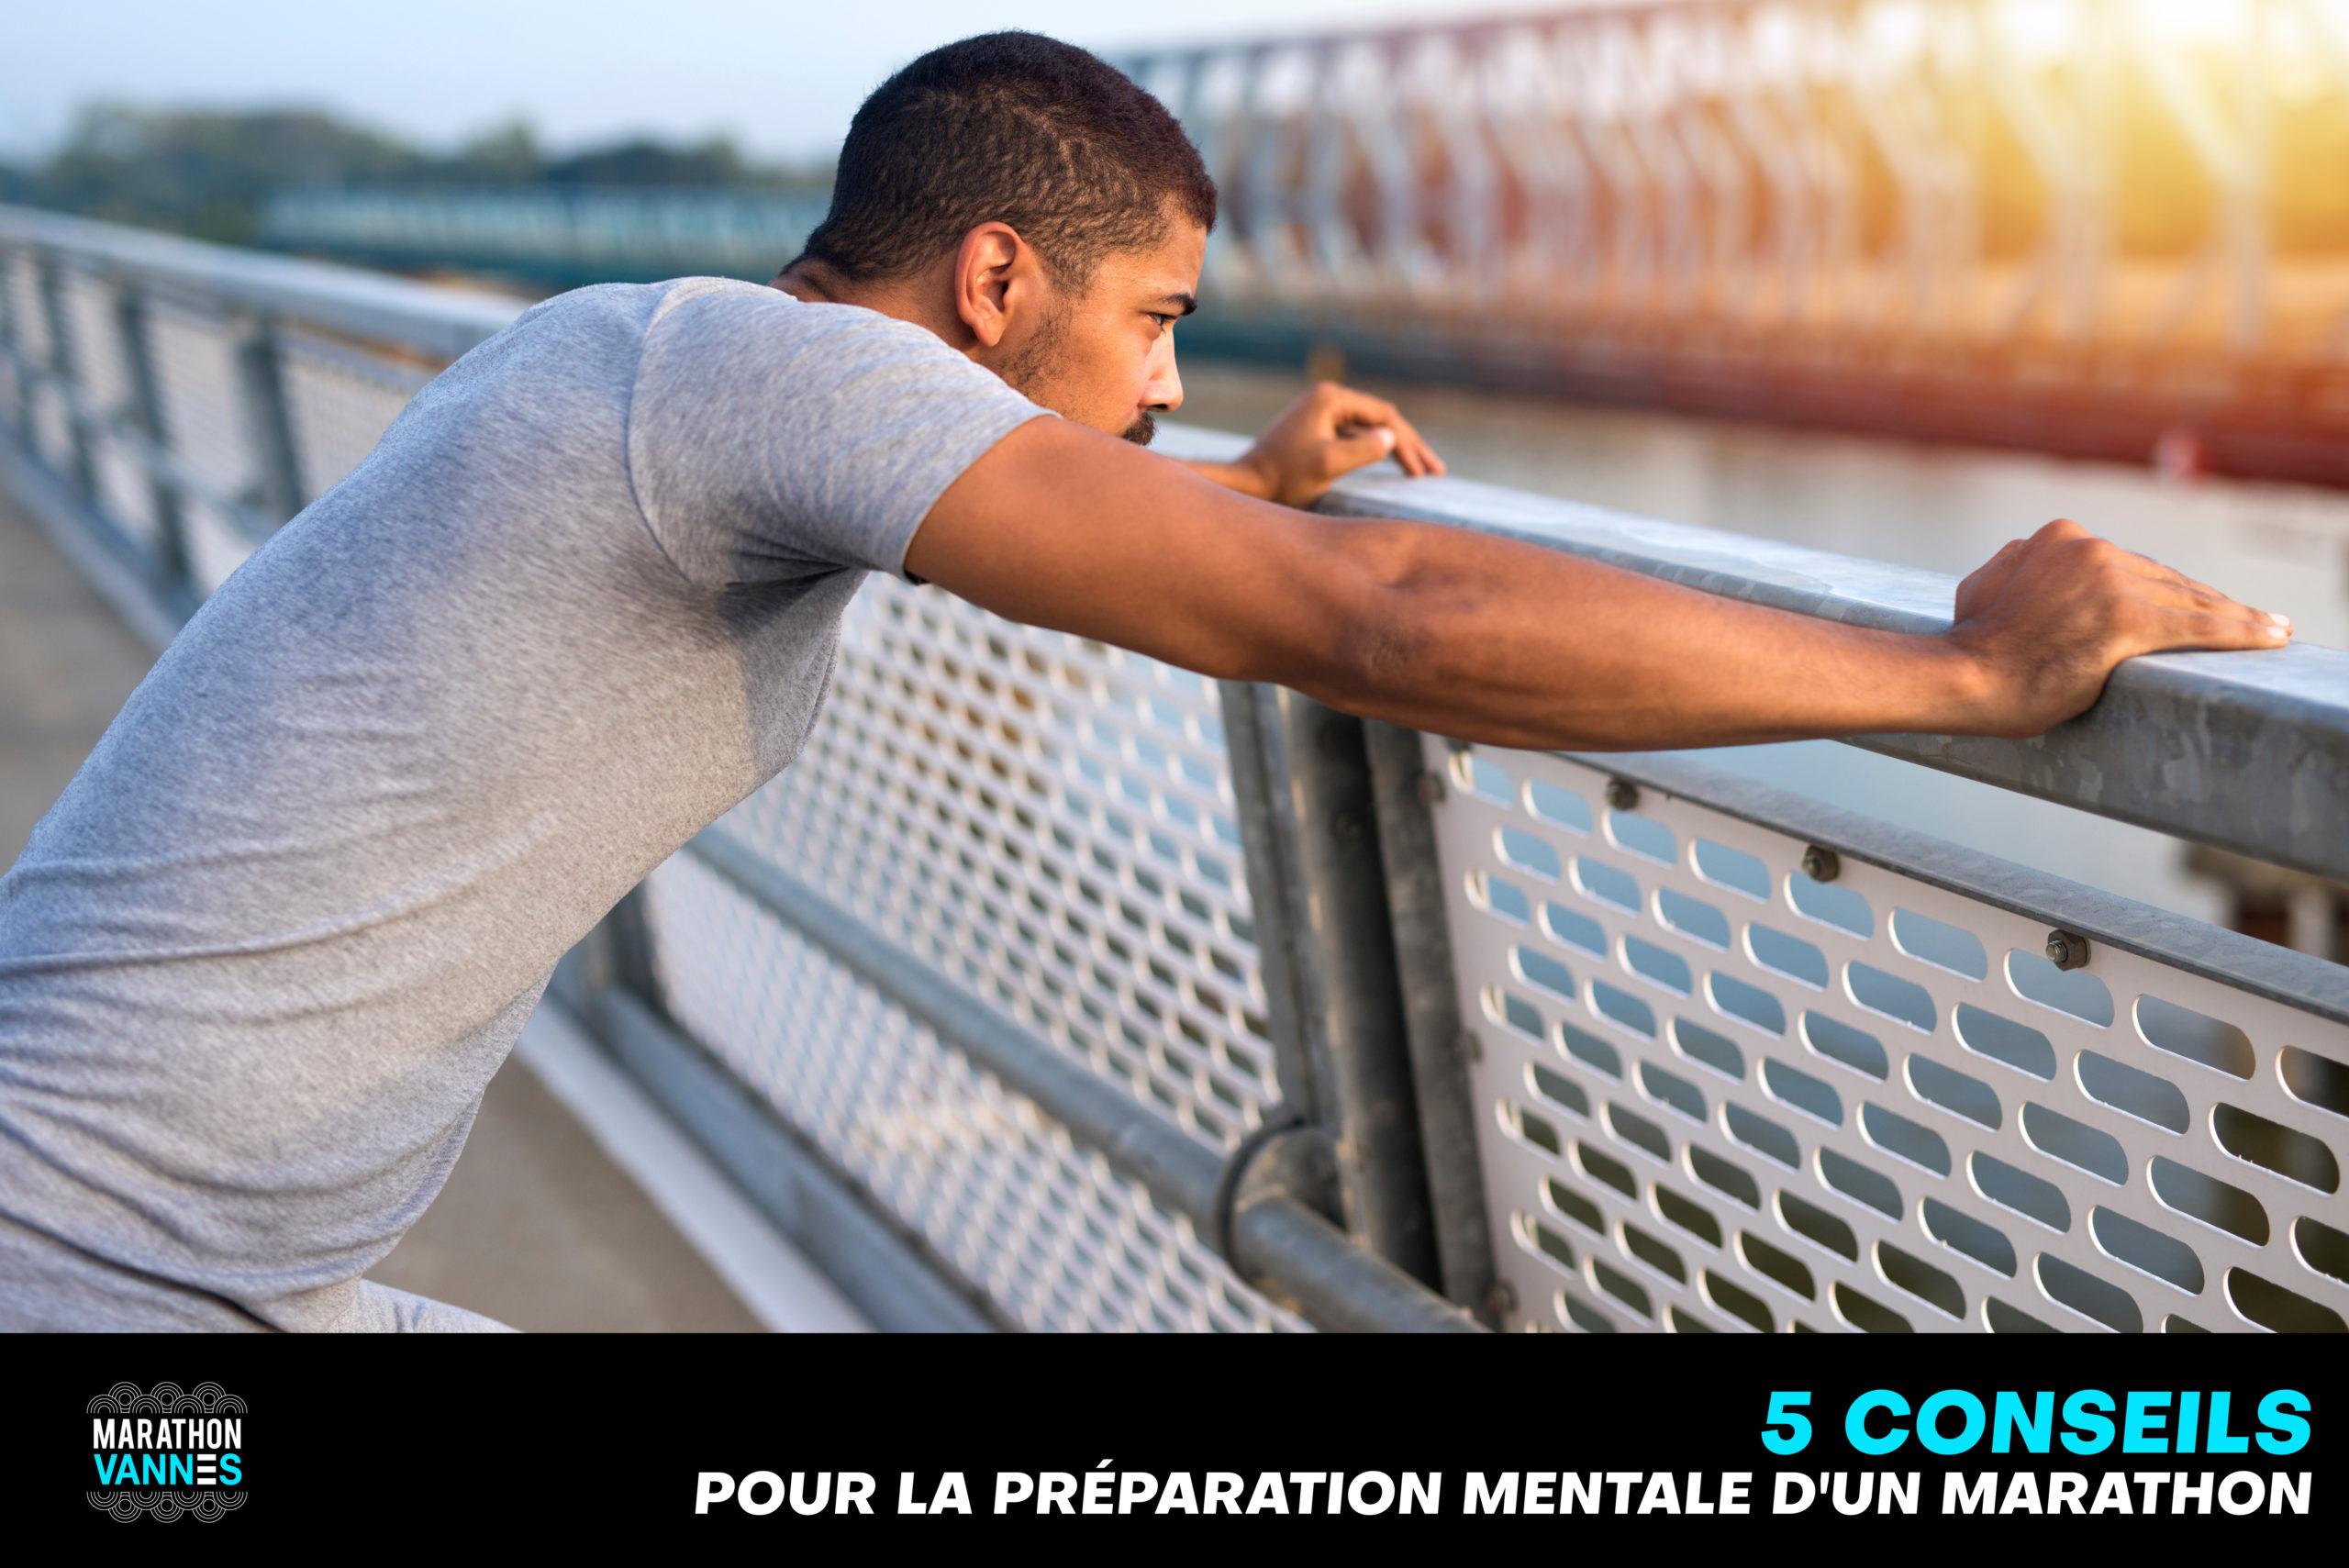 Jeune homme sportif en pleine préparation mentale concentré pour un marathon.